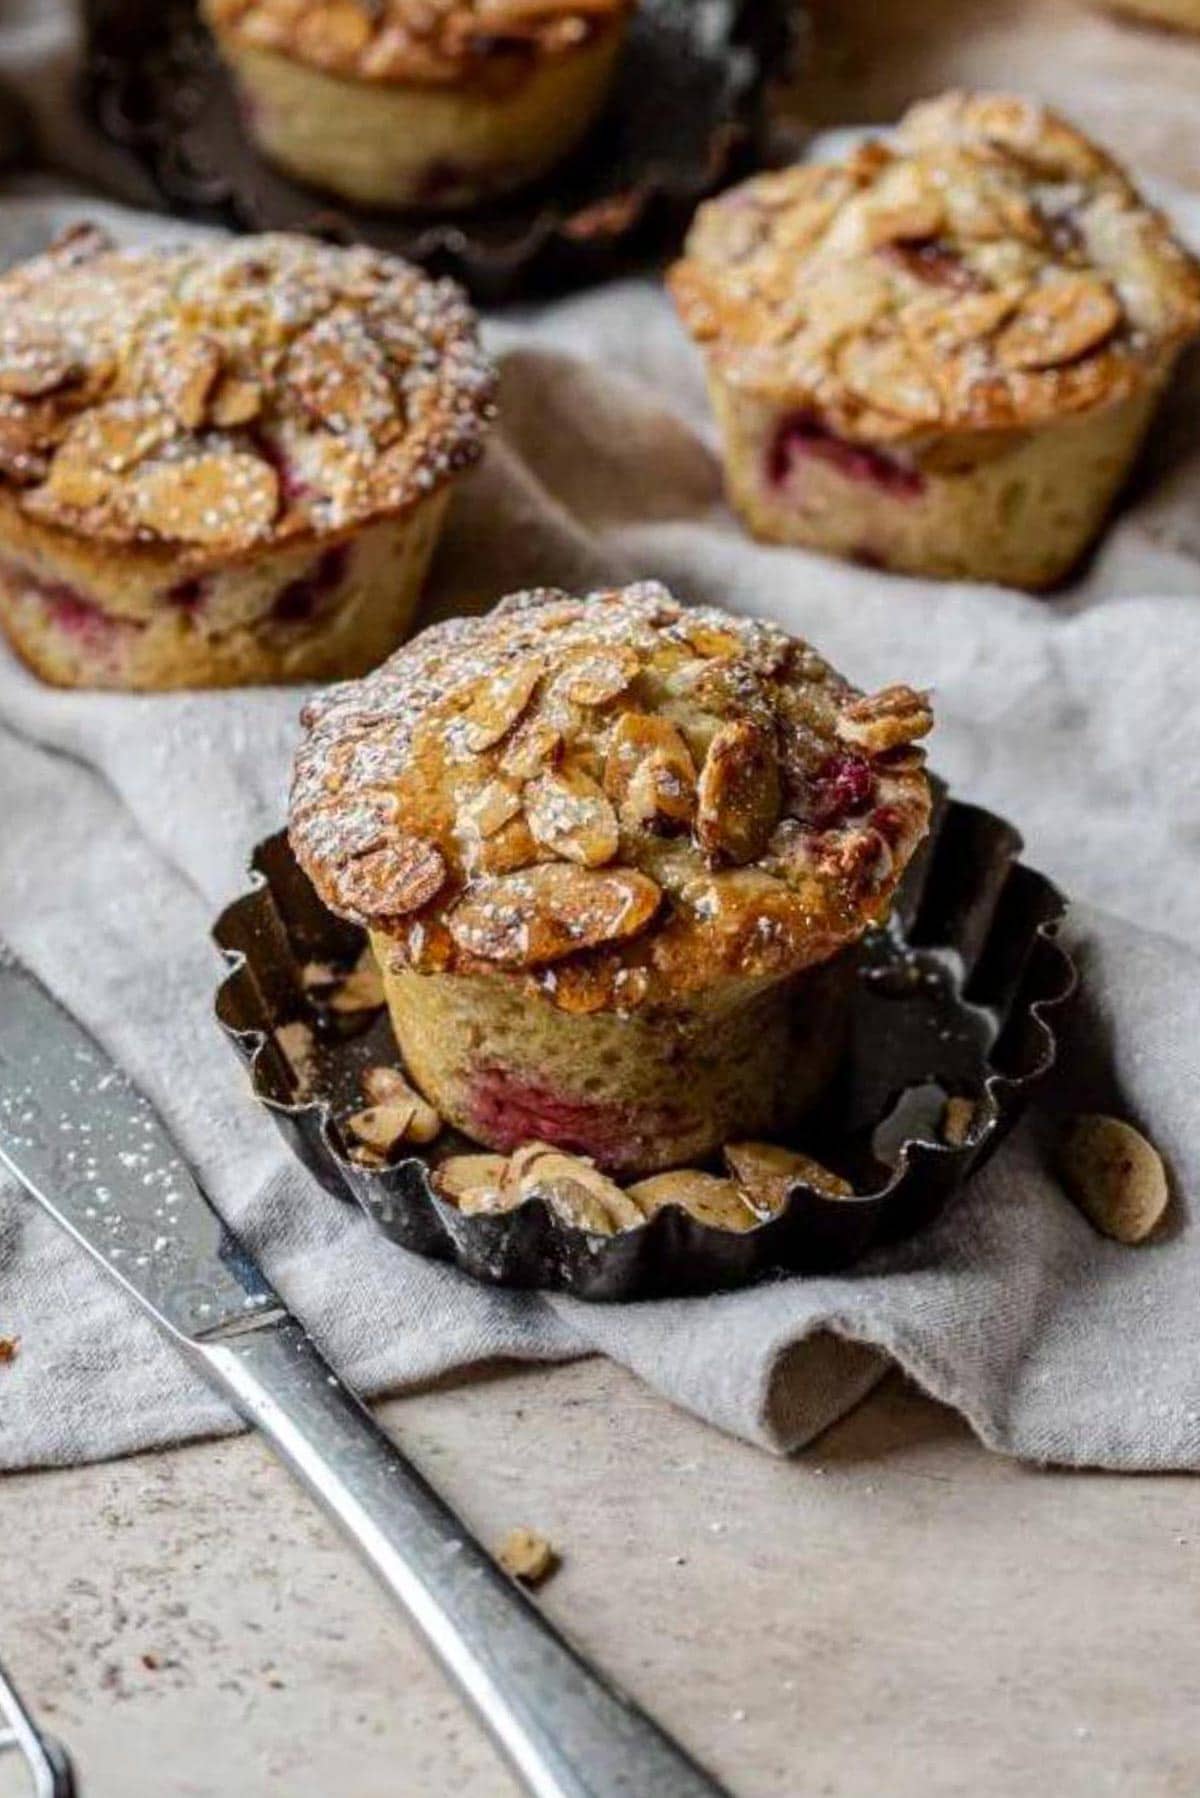 Raspberry almond muffin on a gray linen.